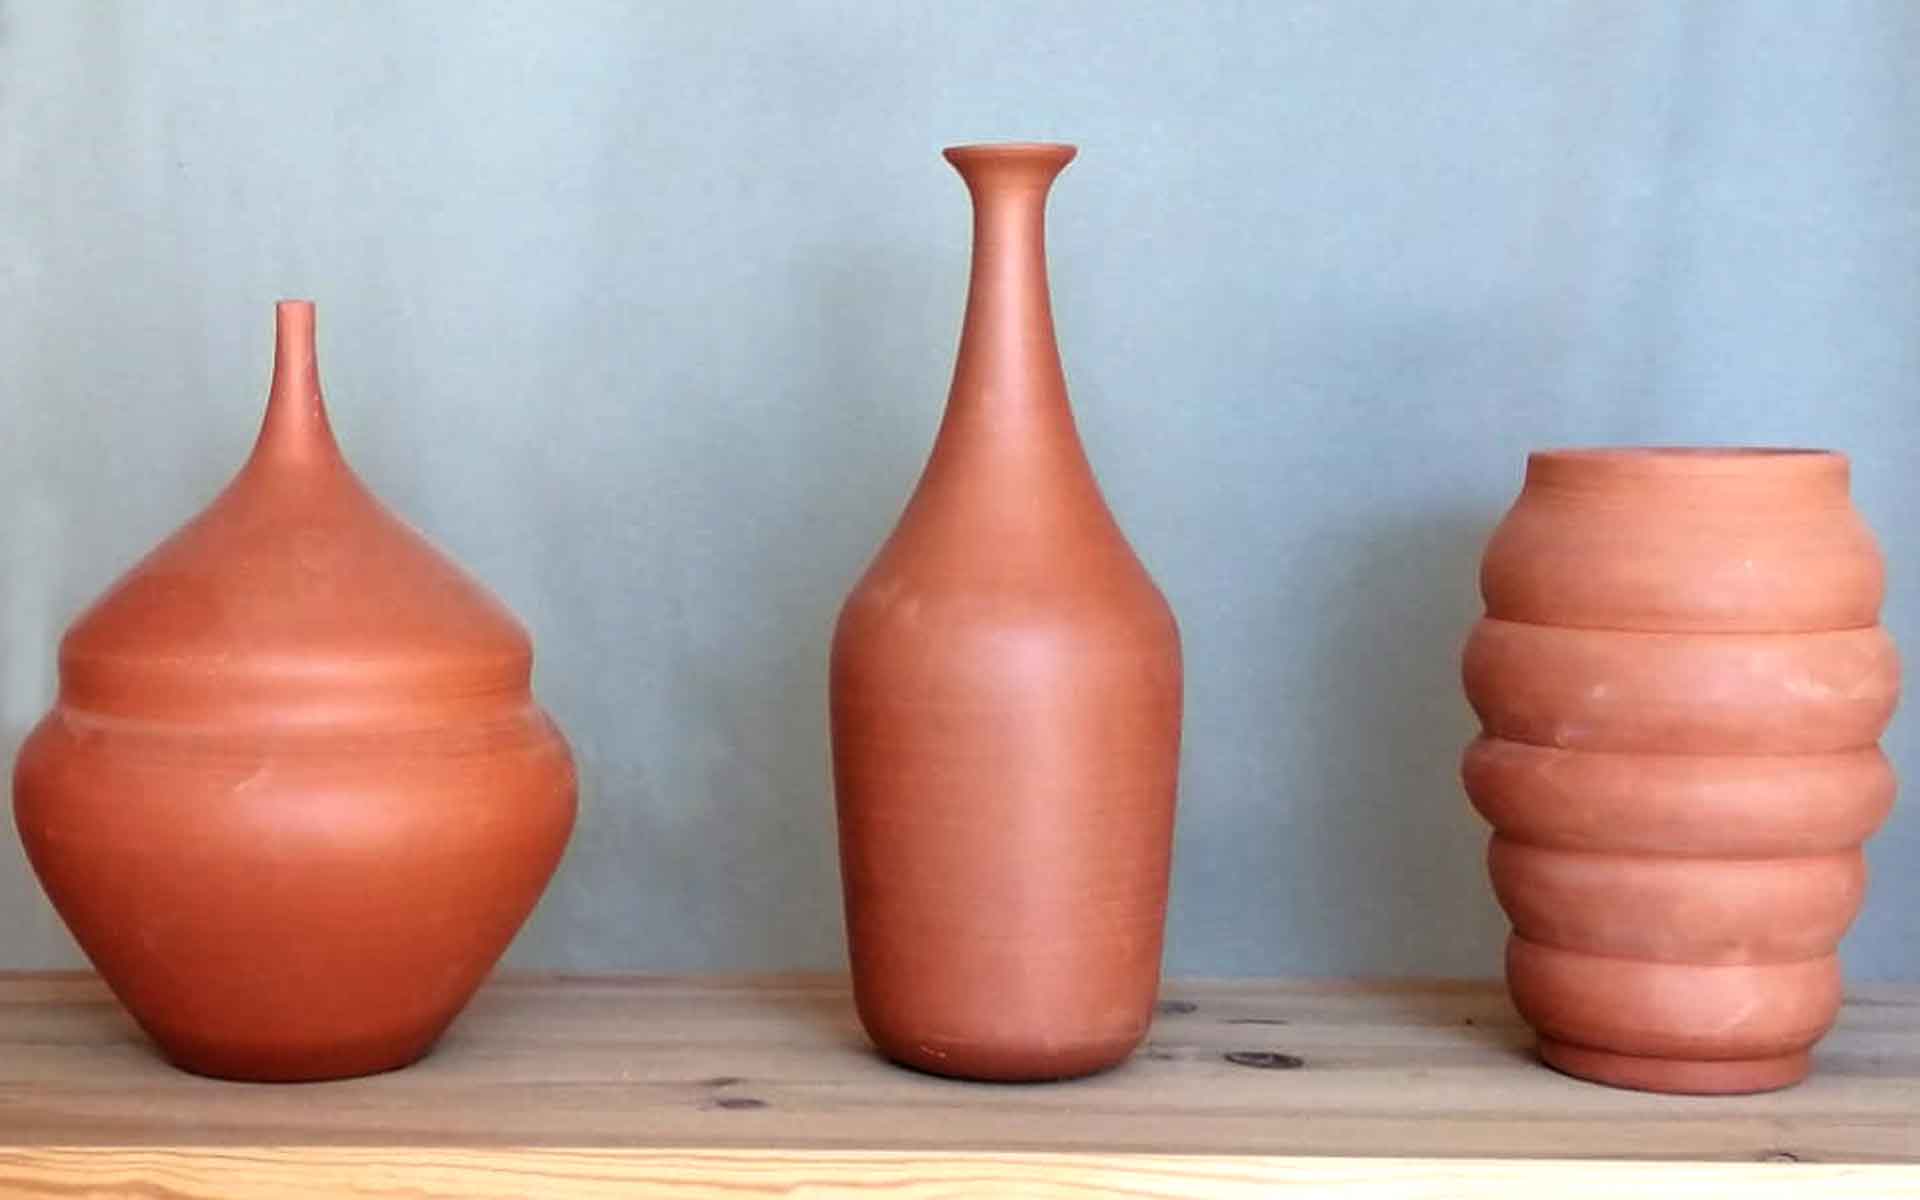 Introducción al Torno - 137º Ceramic Art Studio Barcelona